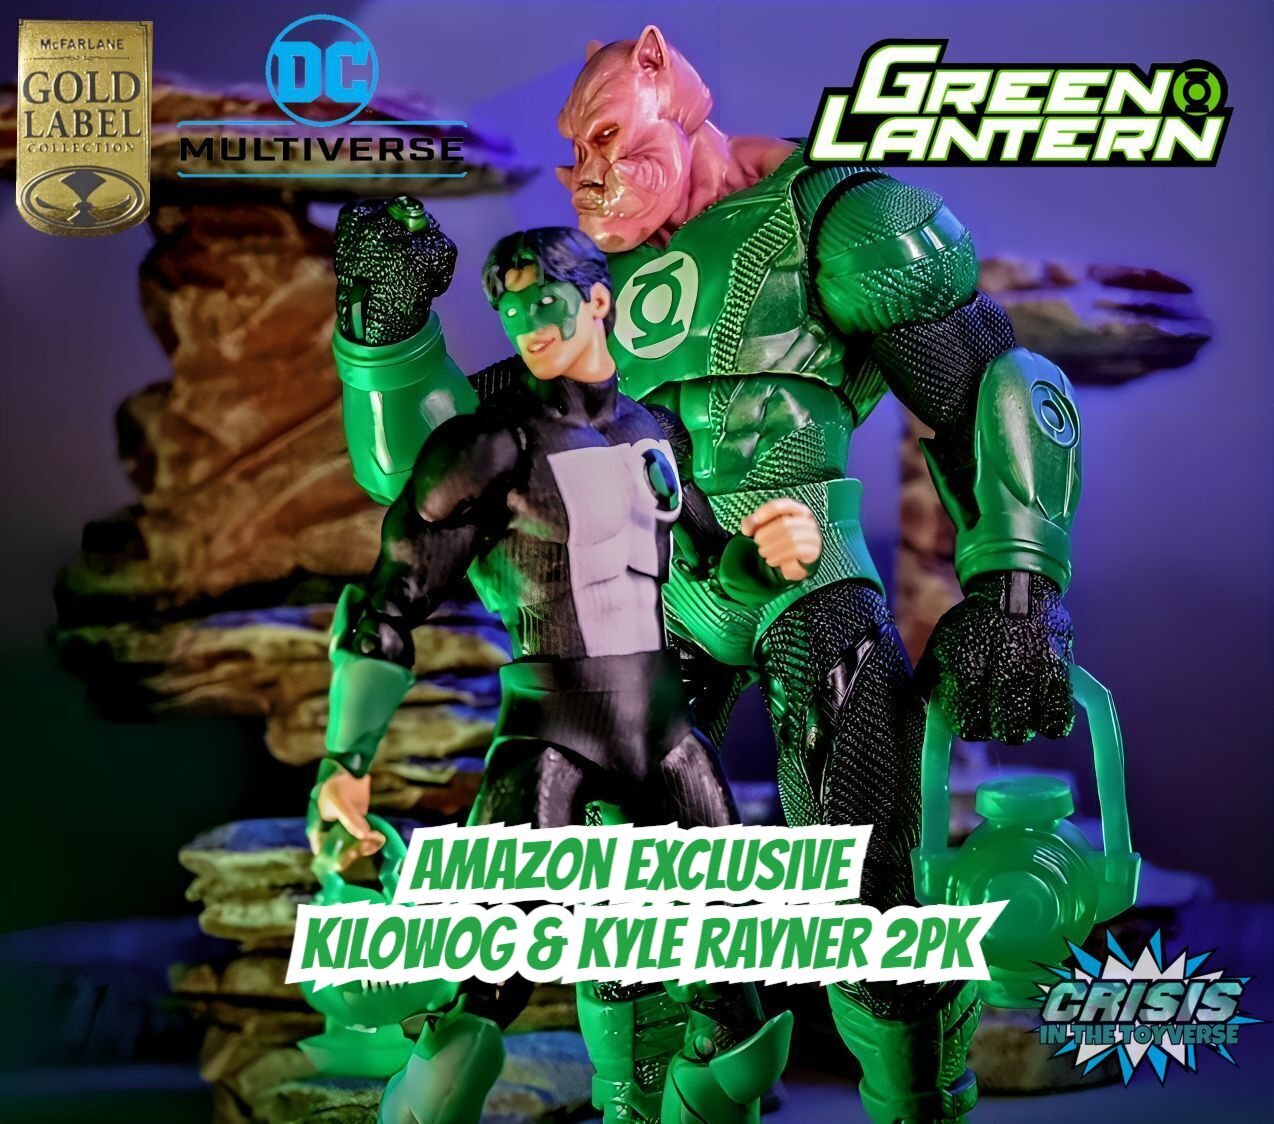 Mcfarlane Toys Amazon Exclusive Gold Label DC Multiverse Kilowog & Green Lantern 2pk Review